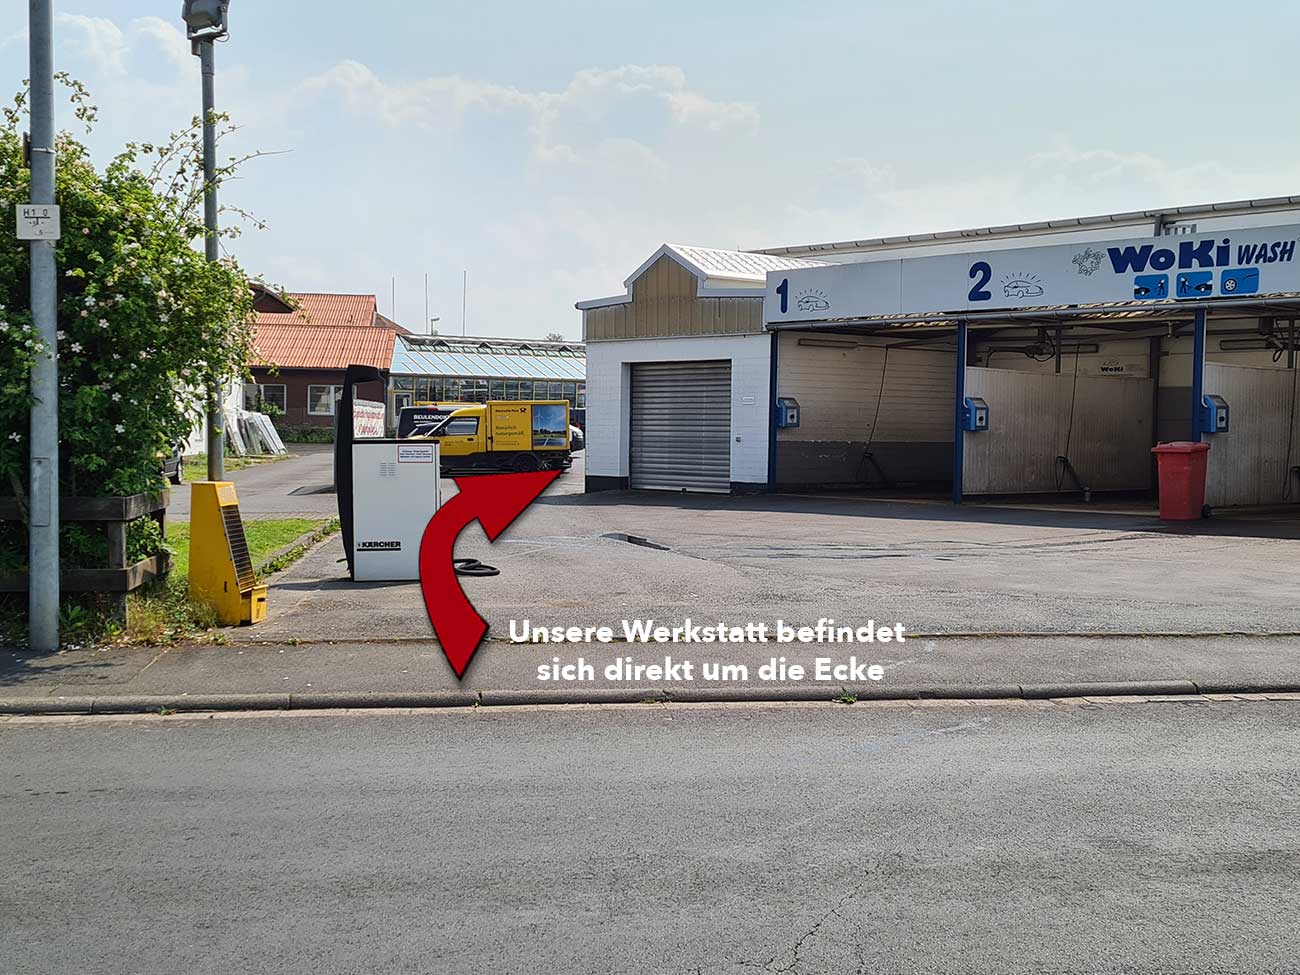 Zufahrt zur Werkstatt-Beulendoktor Kassel- Die Fahrzeug-Ambulanz